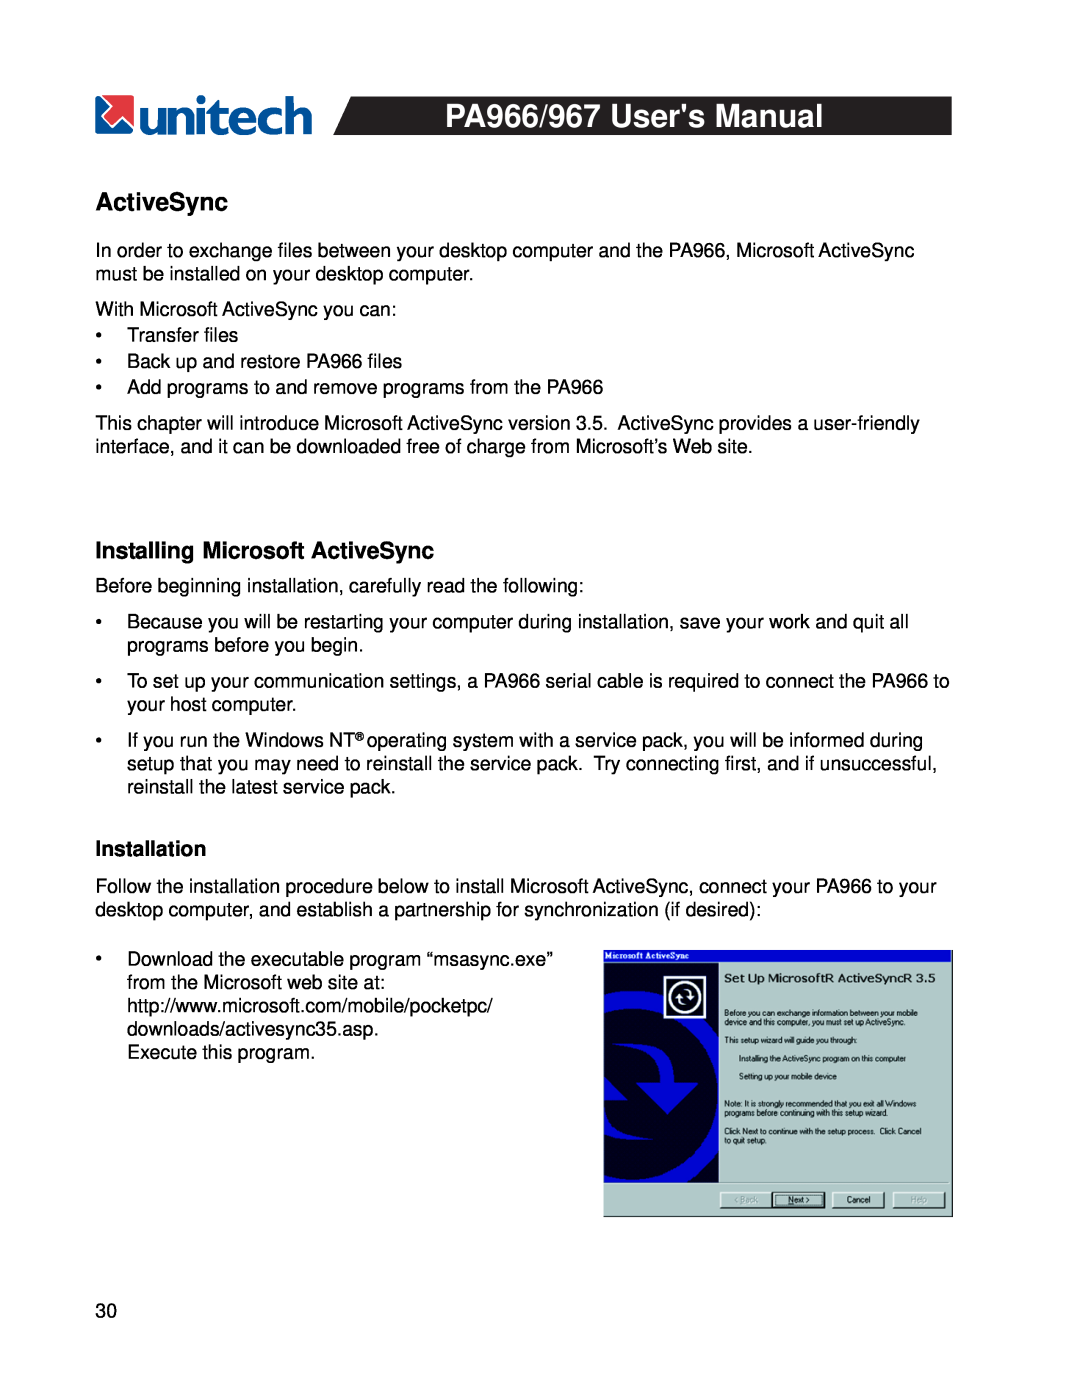 Unitech PA967, PA966 user manual Installation, Installing Microsoft ActiveSync 